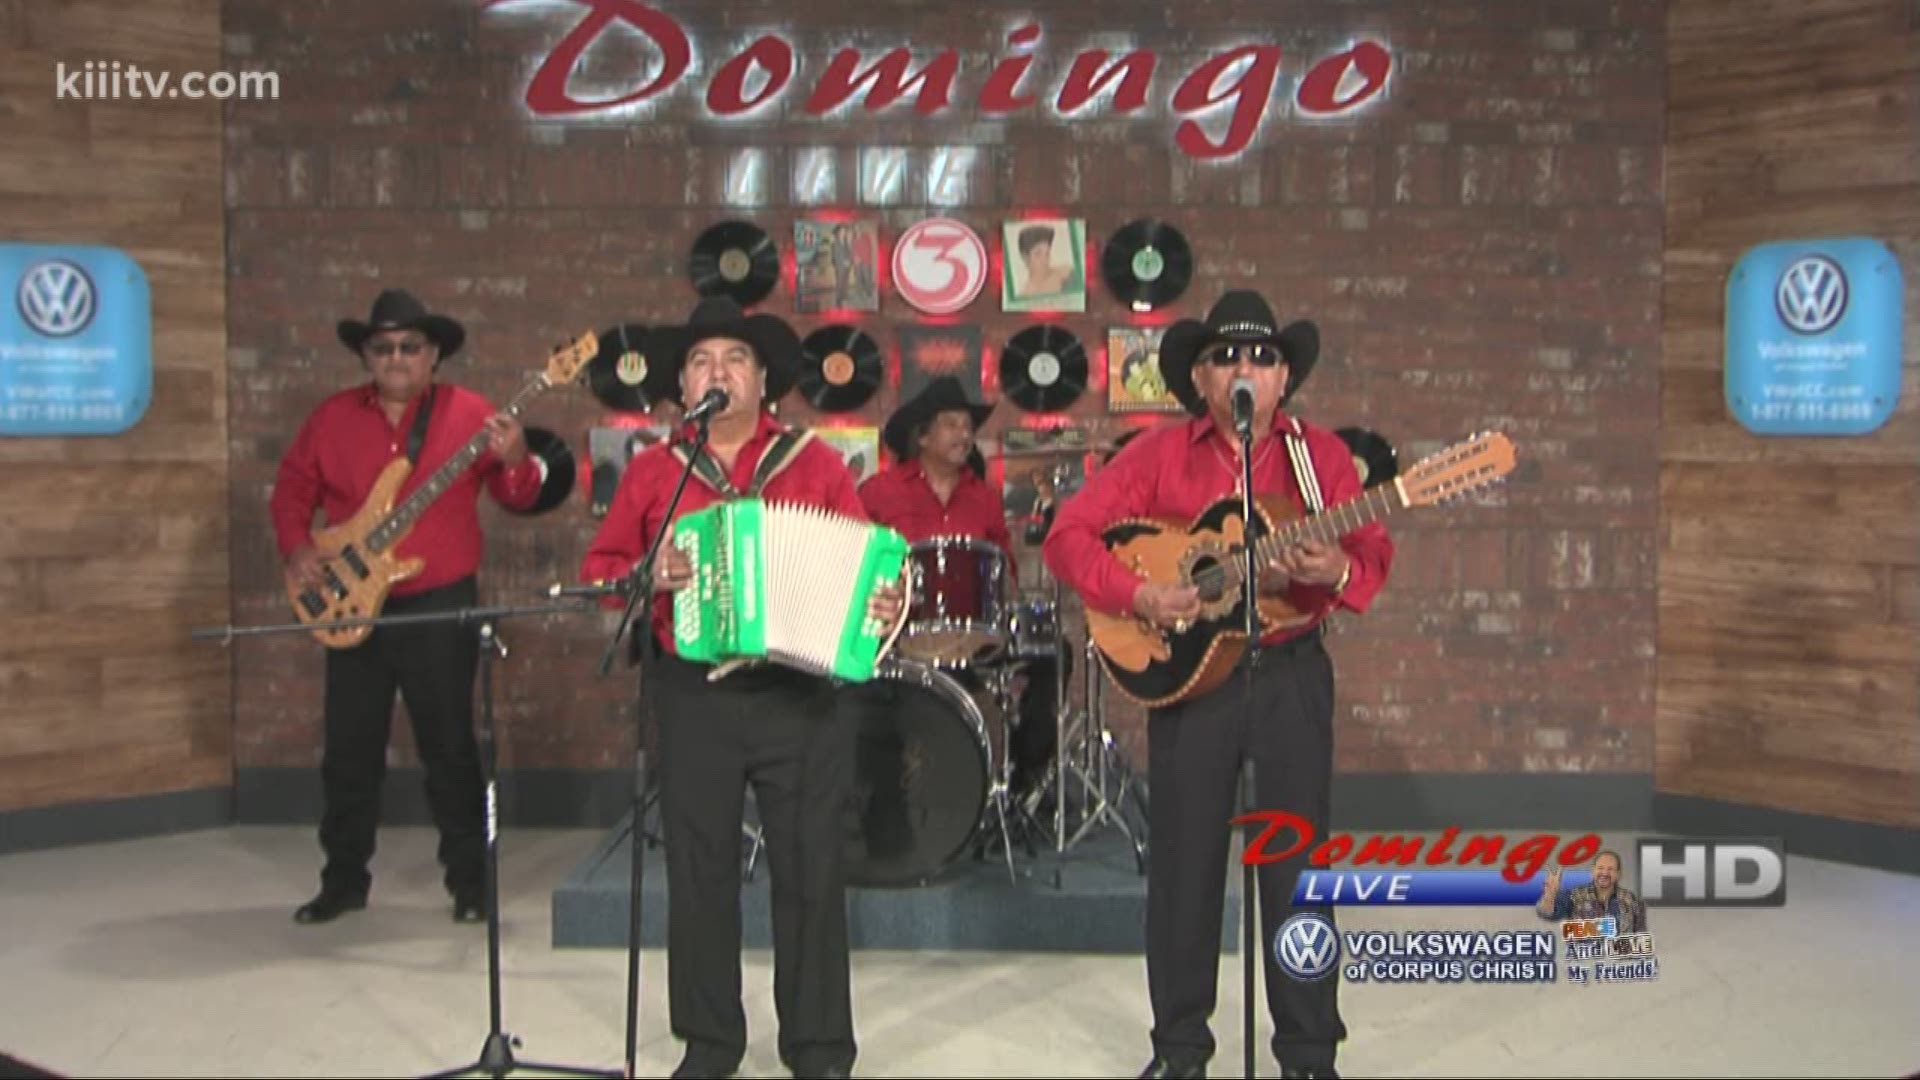 Los Tremendos De George Y Oscar performing "Un Cachito" on Domingo Live.